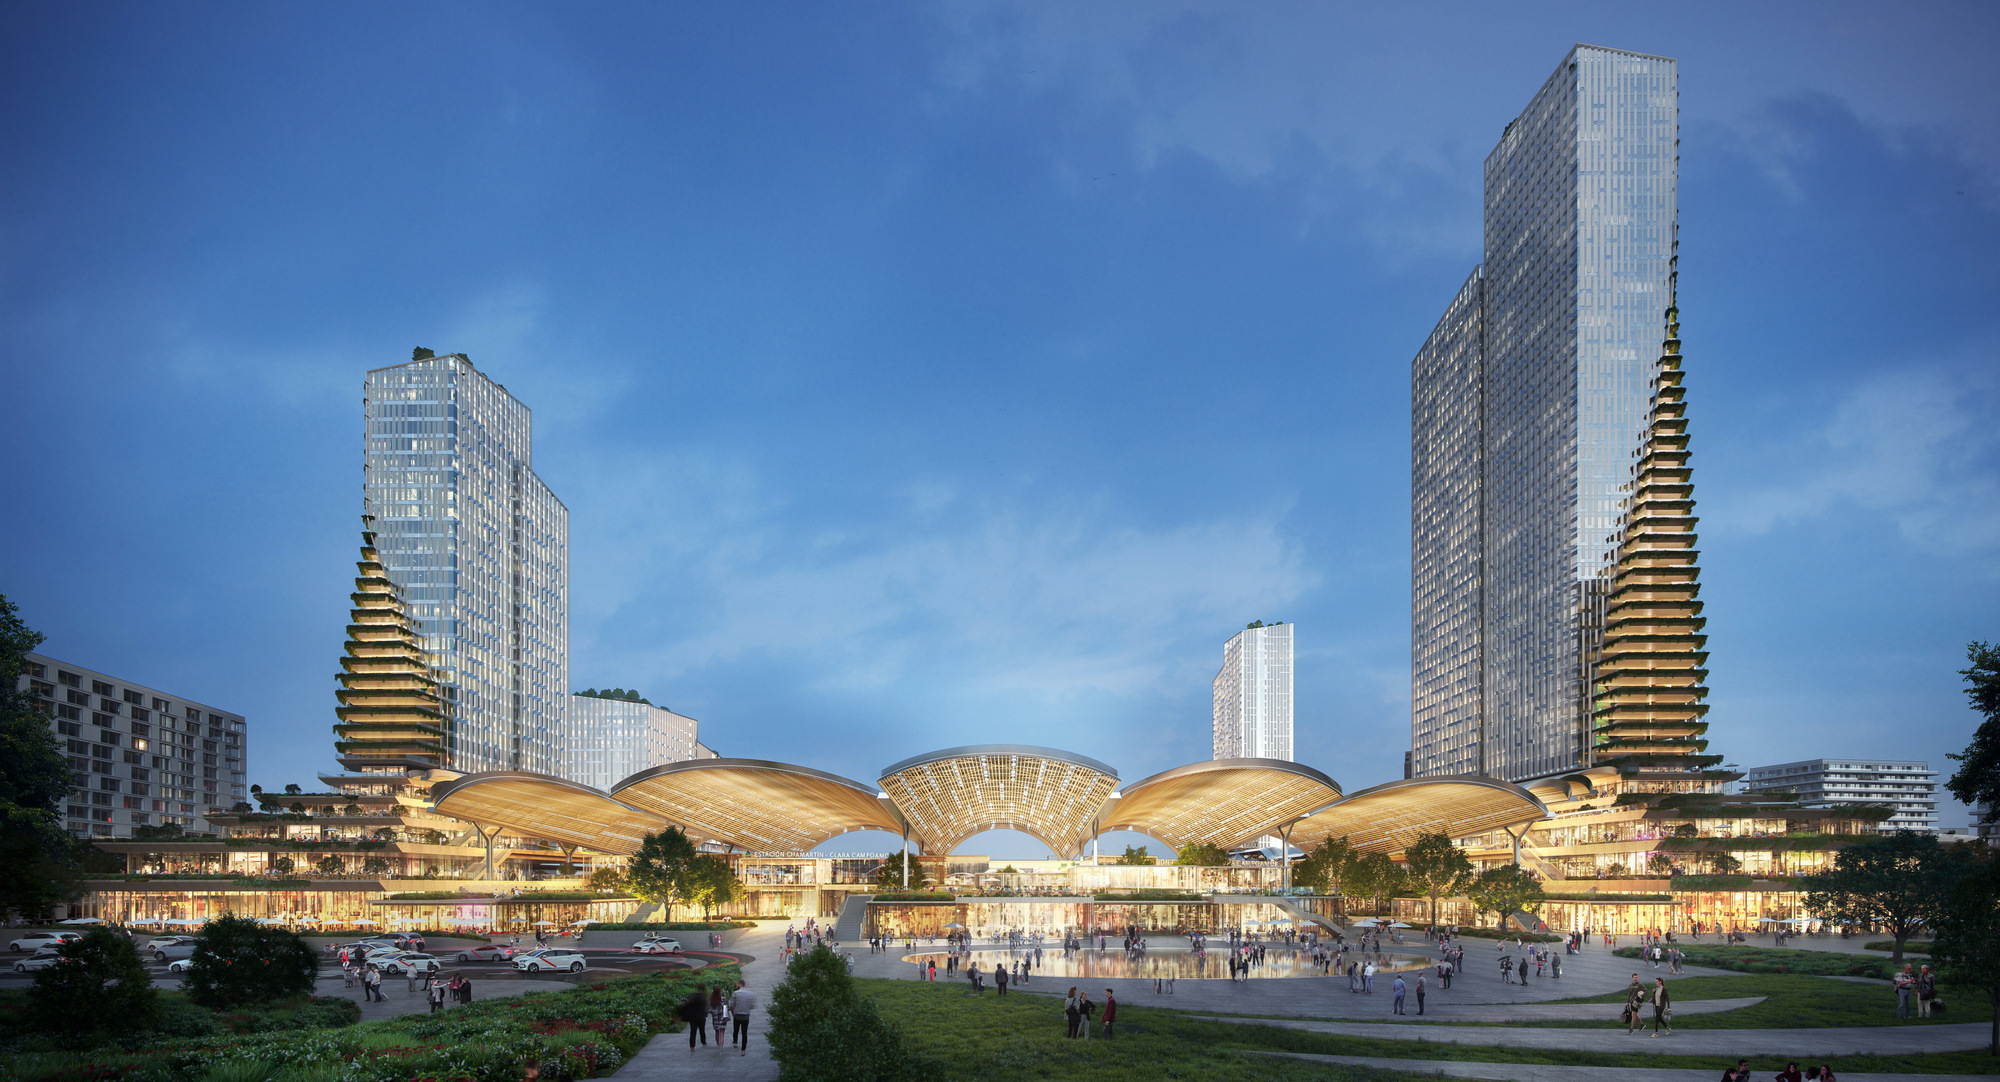 媒体发布 | UNStudio, b720 Arquitectura和Esteyco的马德里查马丁车站联合设计提案于众多世界领先建筑公司方案中赢得最高分